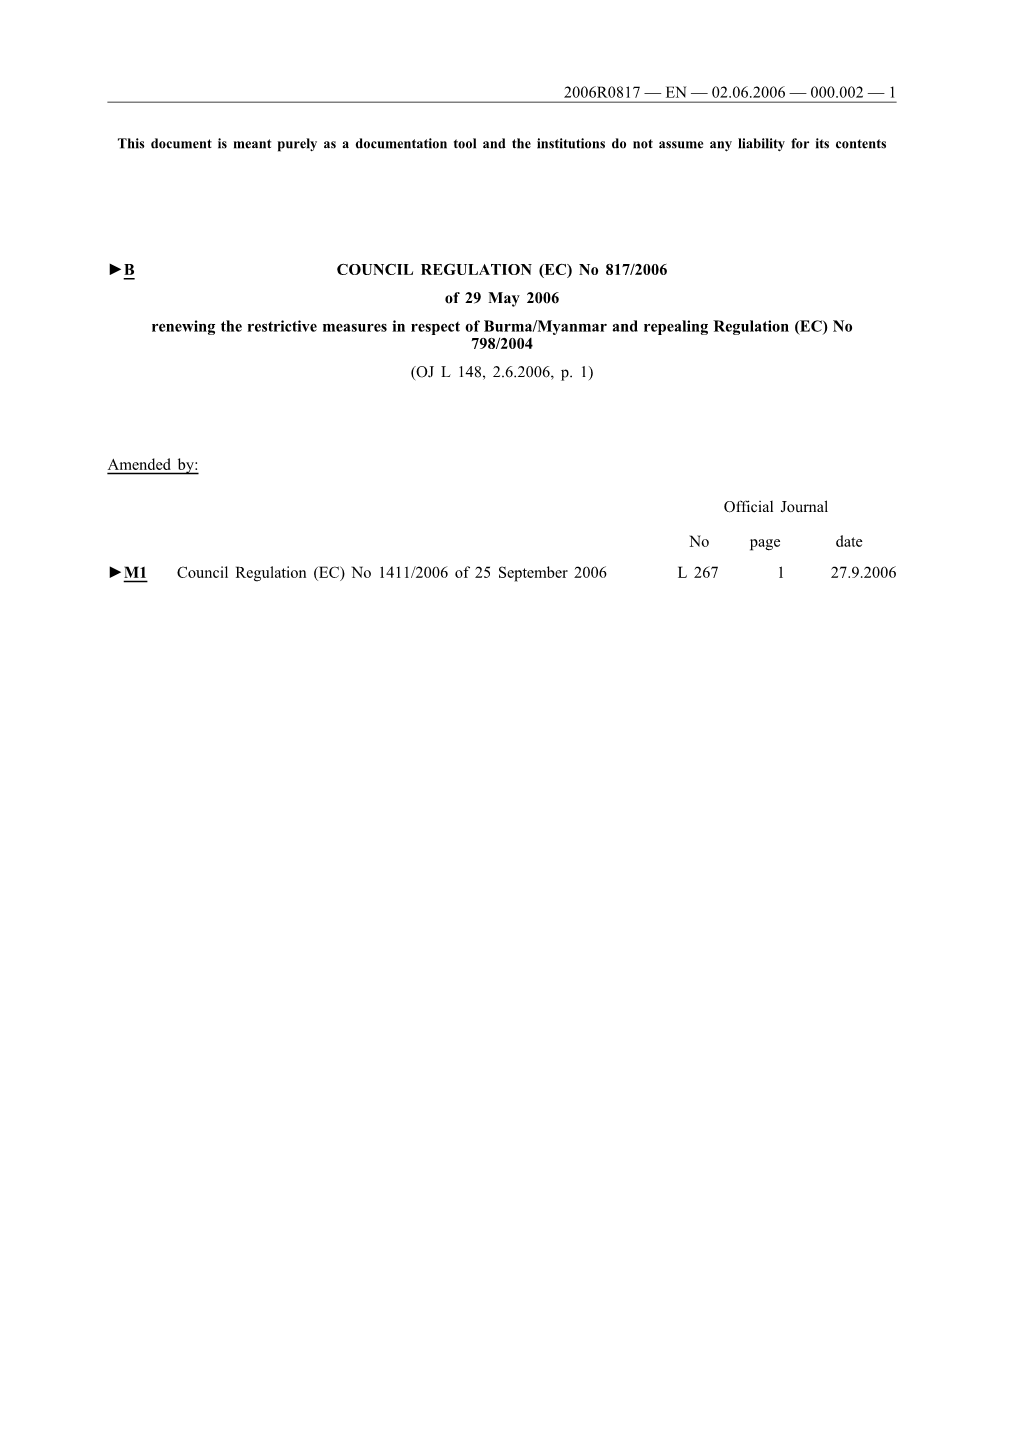 B COUNCIL REGULATION (EC) No 817/2006 of 29